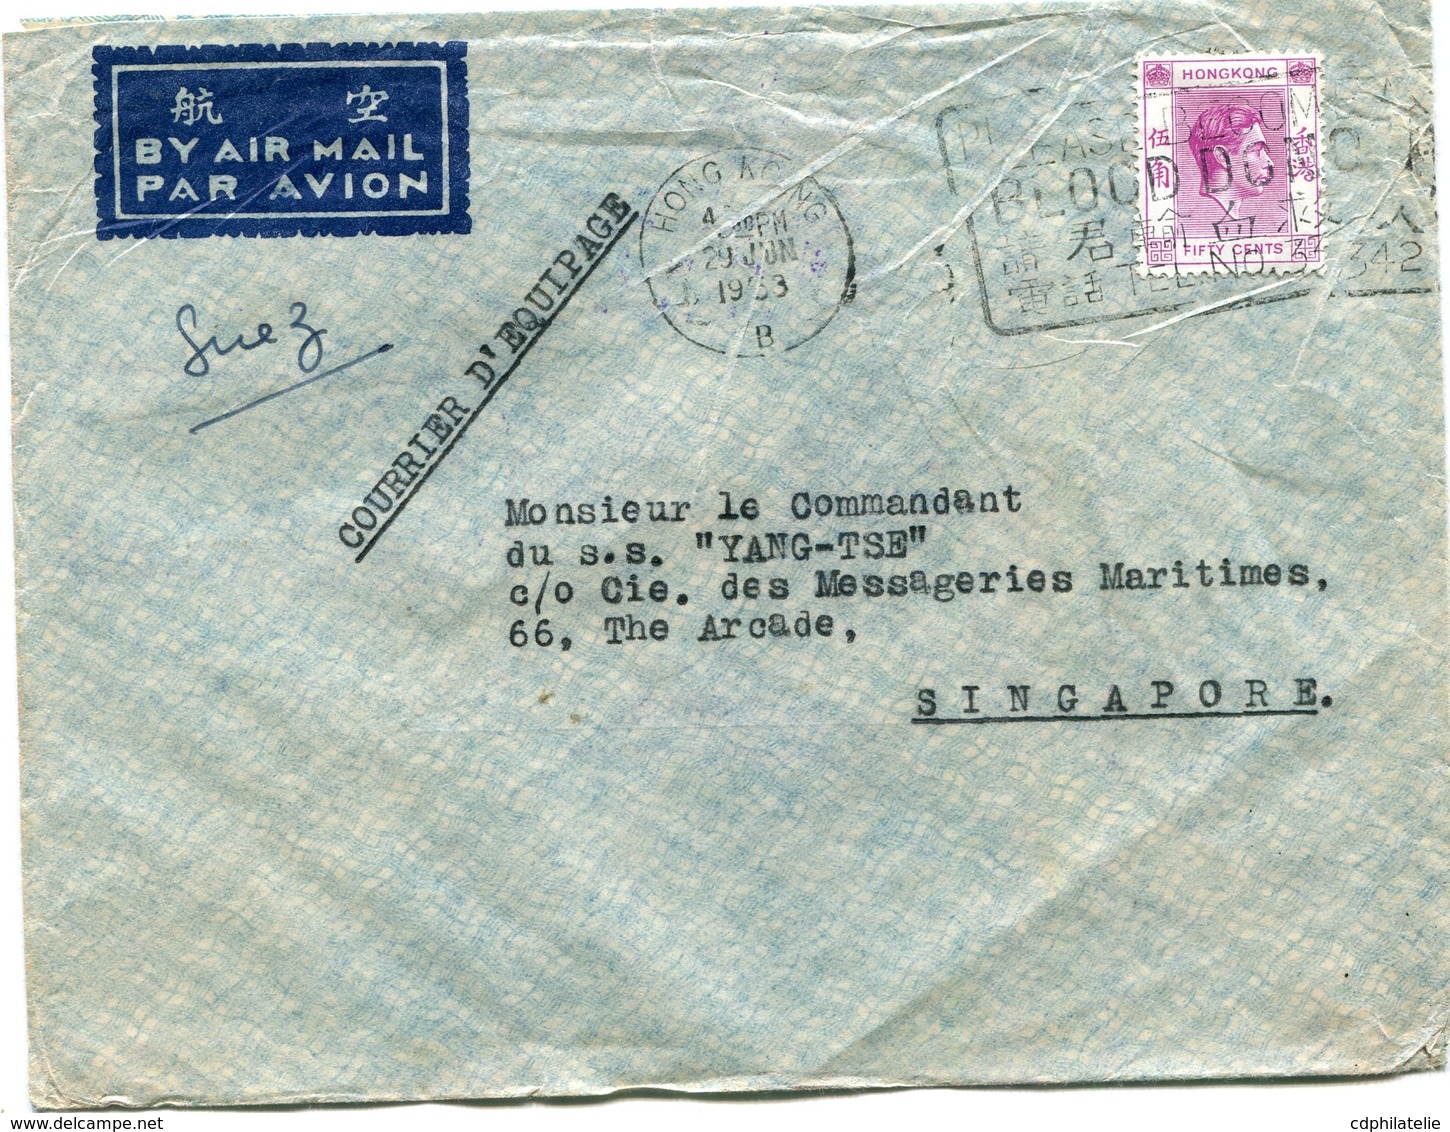 HONG KONG LETTRE PAR AVION DEPART HONG KONG 29 JUN 1953 POUR SINGAPOUR - Lettres & Documents